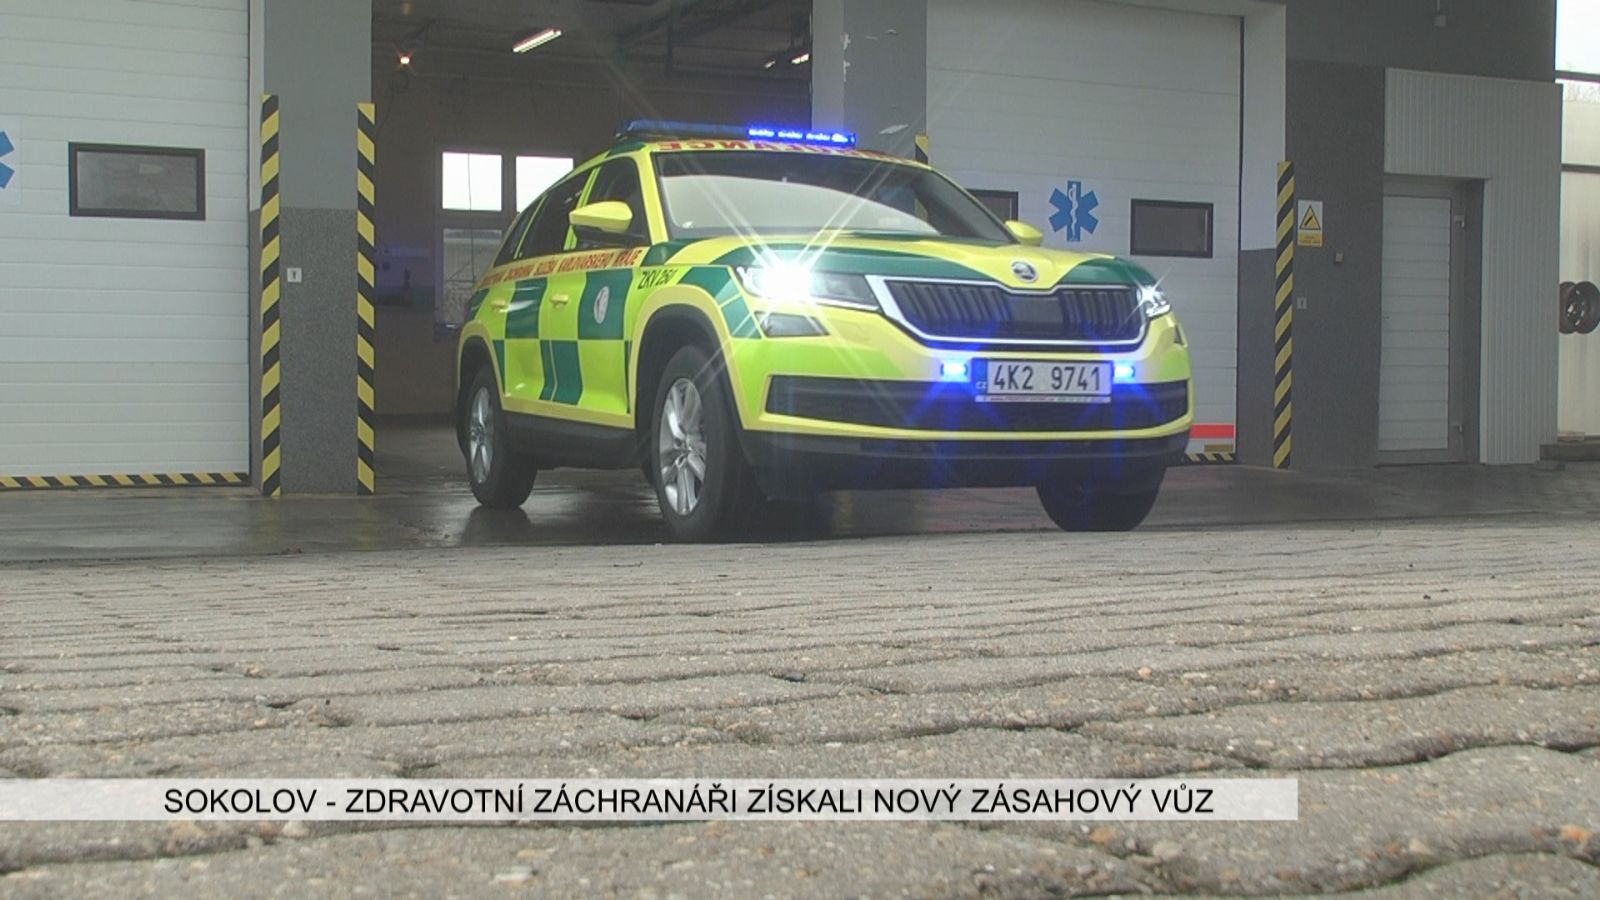 Sokolov: Zdravotní záchranáři získali nový zásahový vůz (TV Západ)